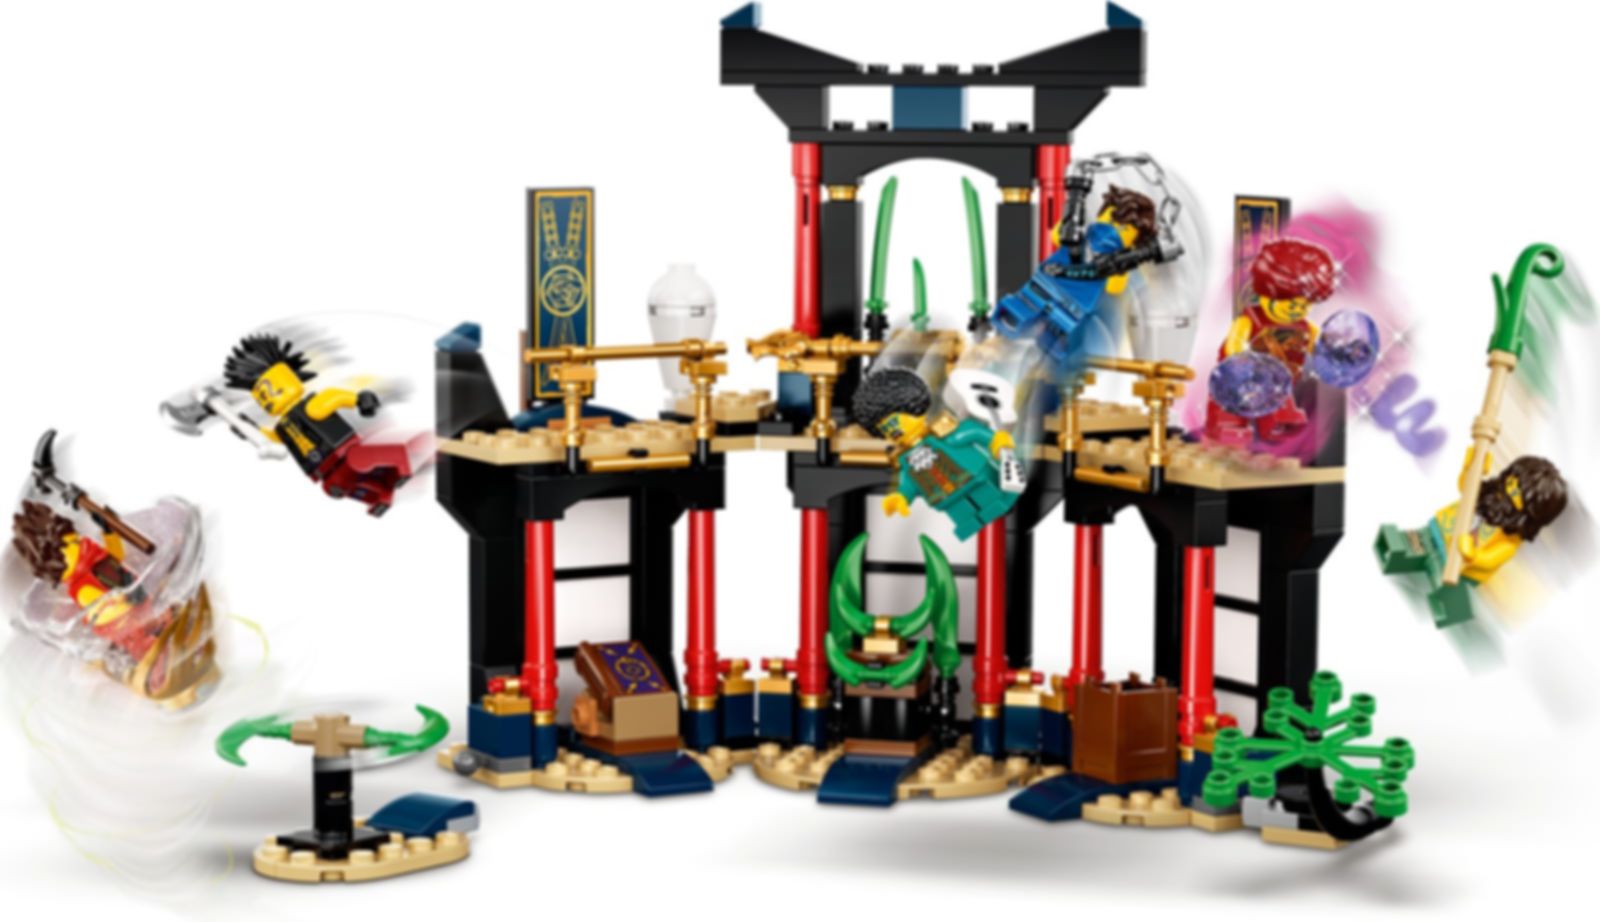 LEGO® Ninjago Turnier der Elemente spielablauf